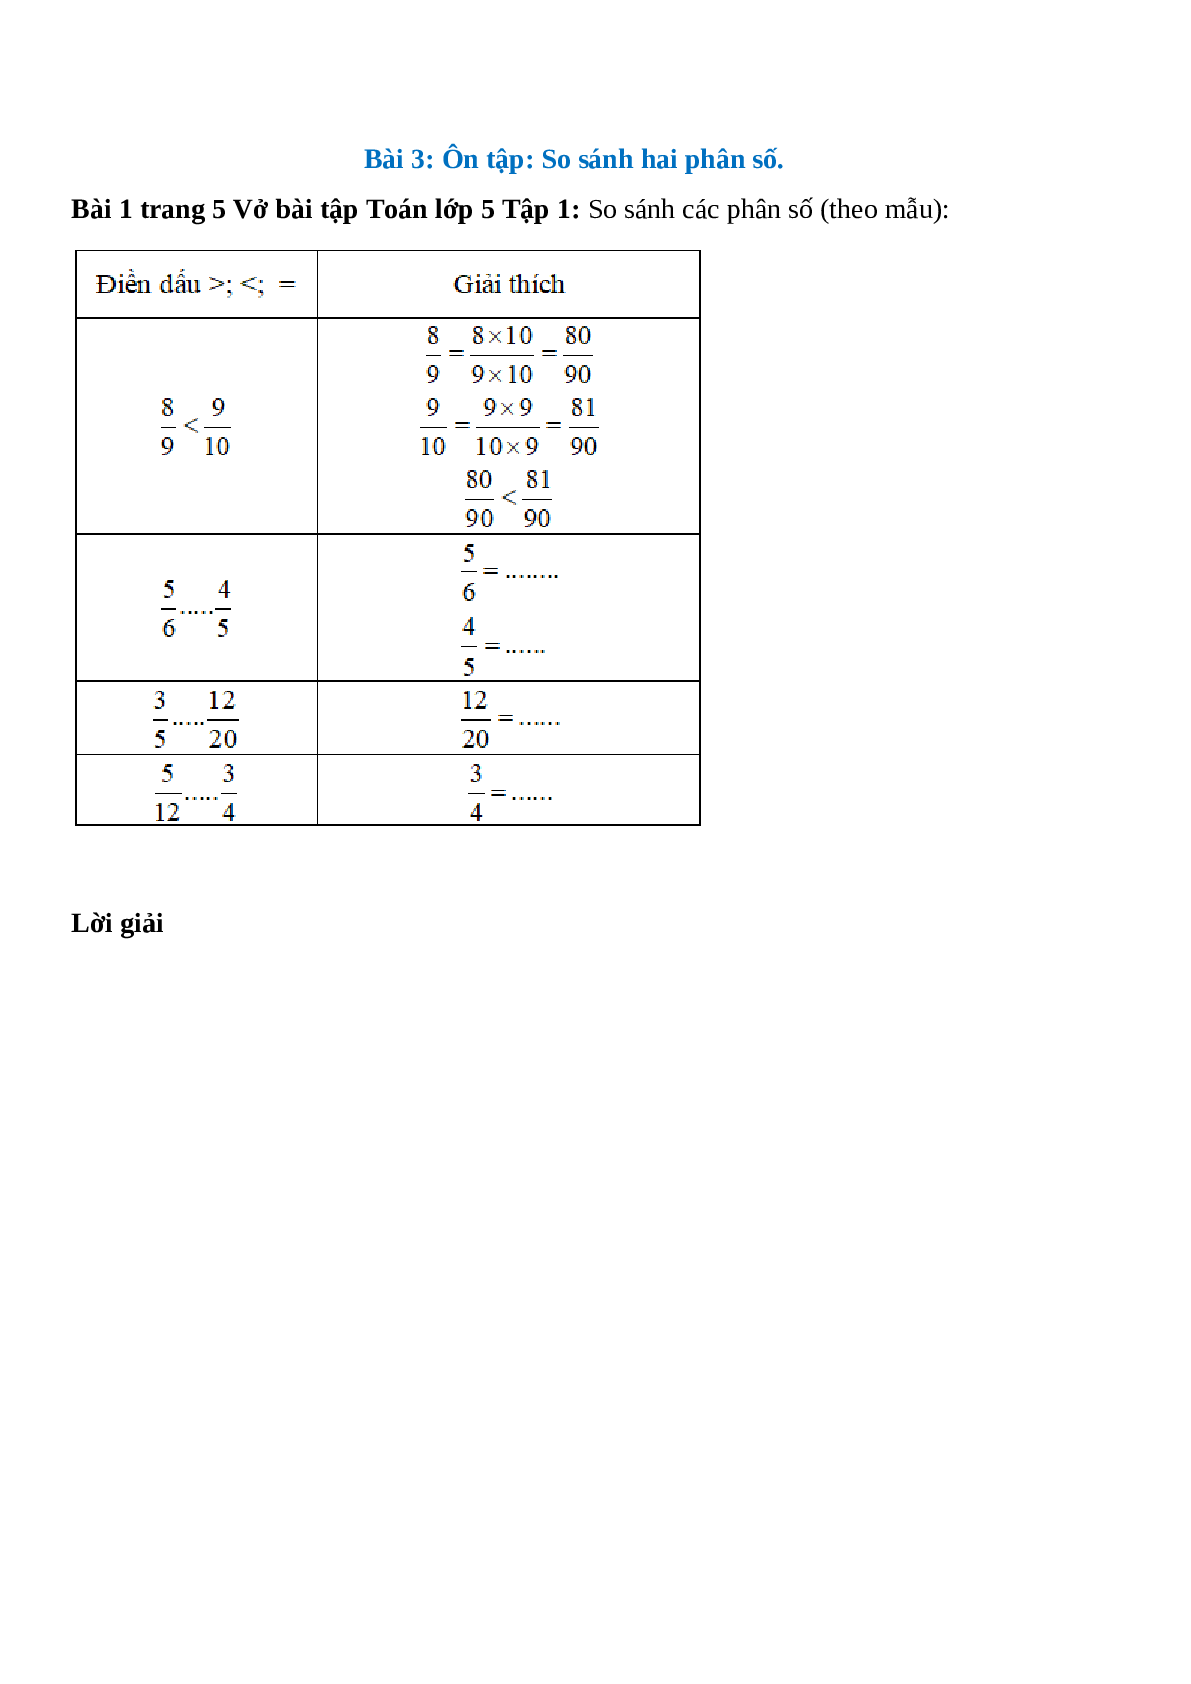 So sánh các phân số (theo mẫu) Bài 1 trang 5 Vở bài tập Toán lớp 5 (trang 1)